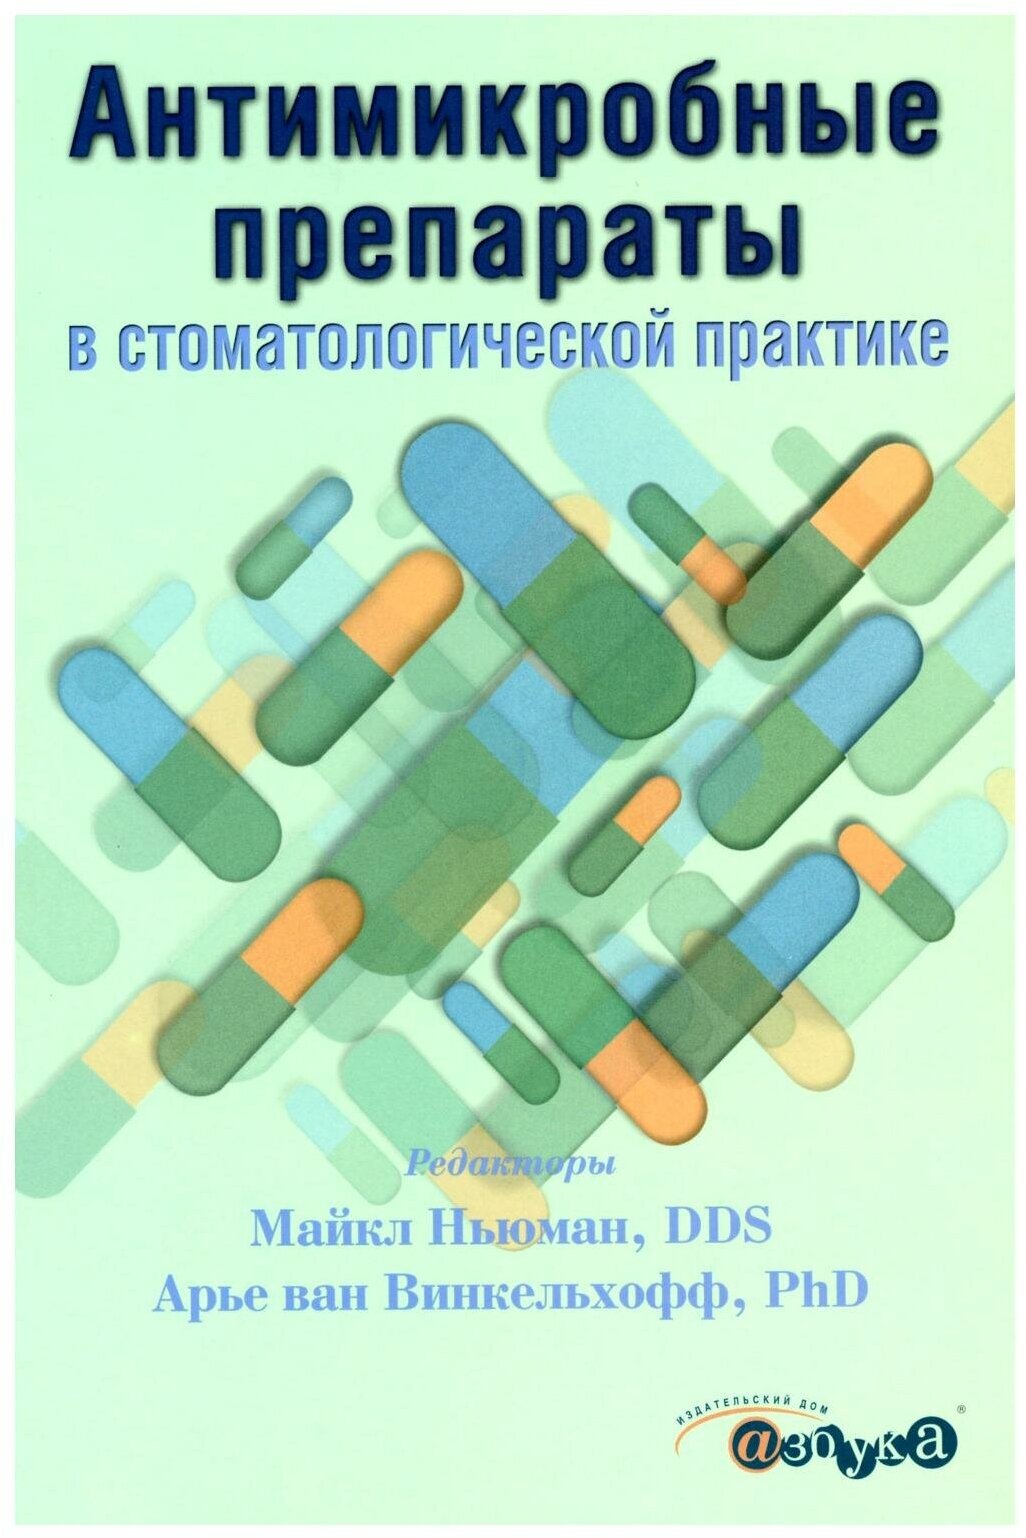 Антимикробные препараты в стоматологической практике. 2-е изд. ИД "Азбука"